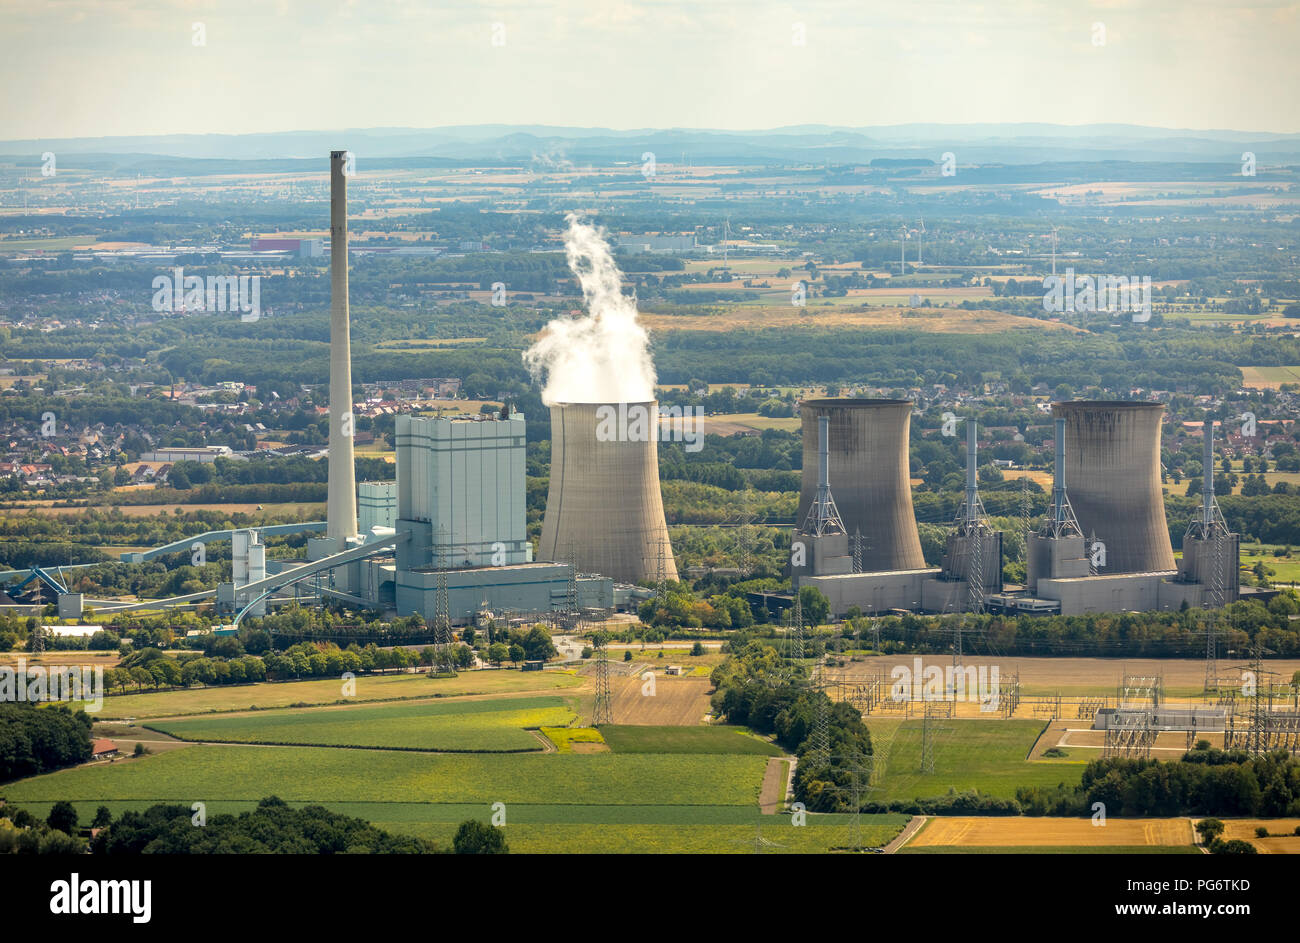 Gersteinwerk, kombinierte Dampfkraftwerk Steinkohle und Erdgas, die RWE AG, die Werner Stadtteil Stockum, Kühltürme, Wasserdampf, Emission, Chim Stockfoto